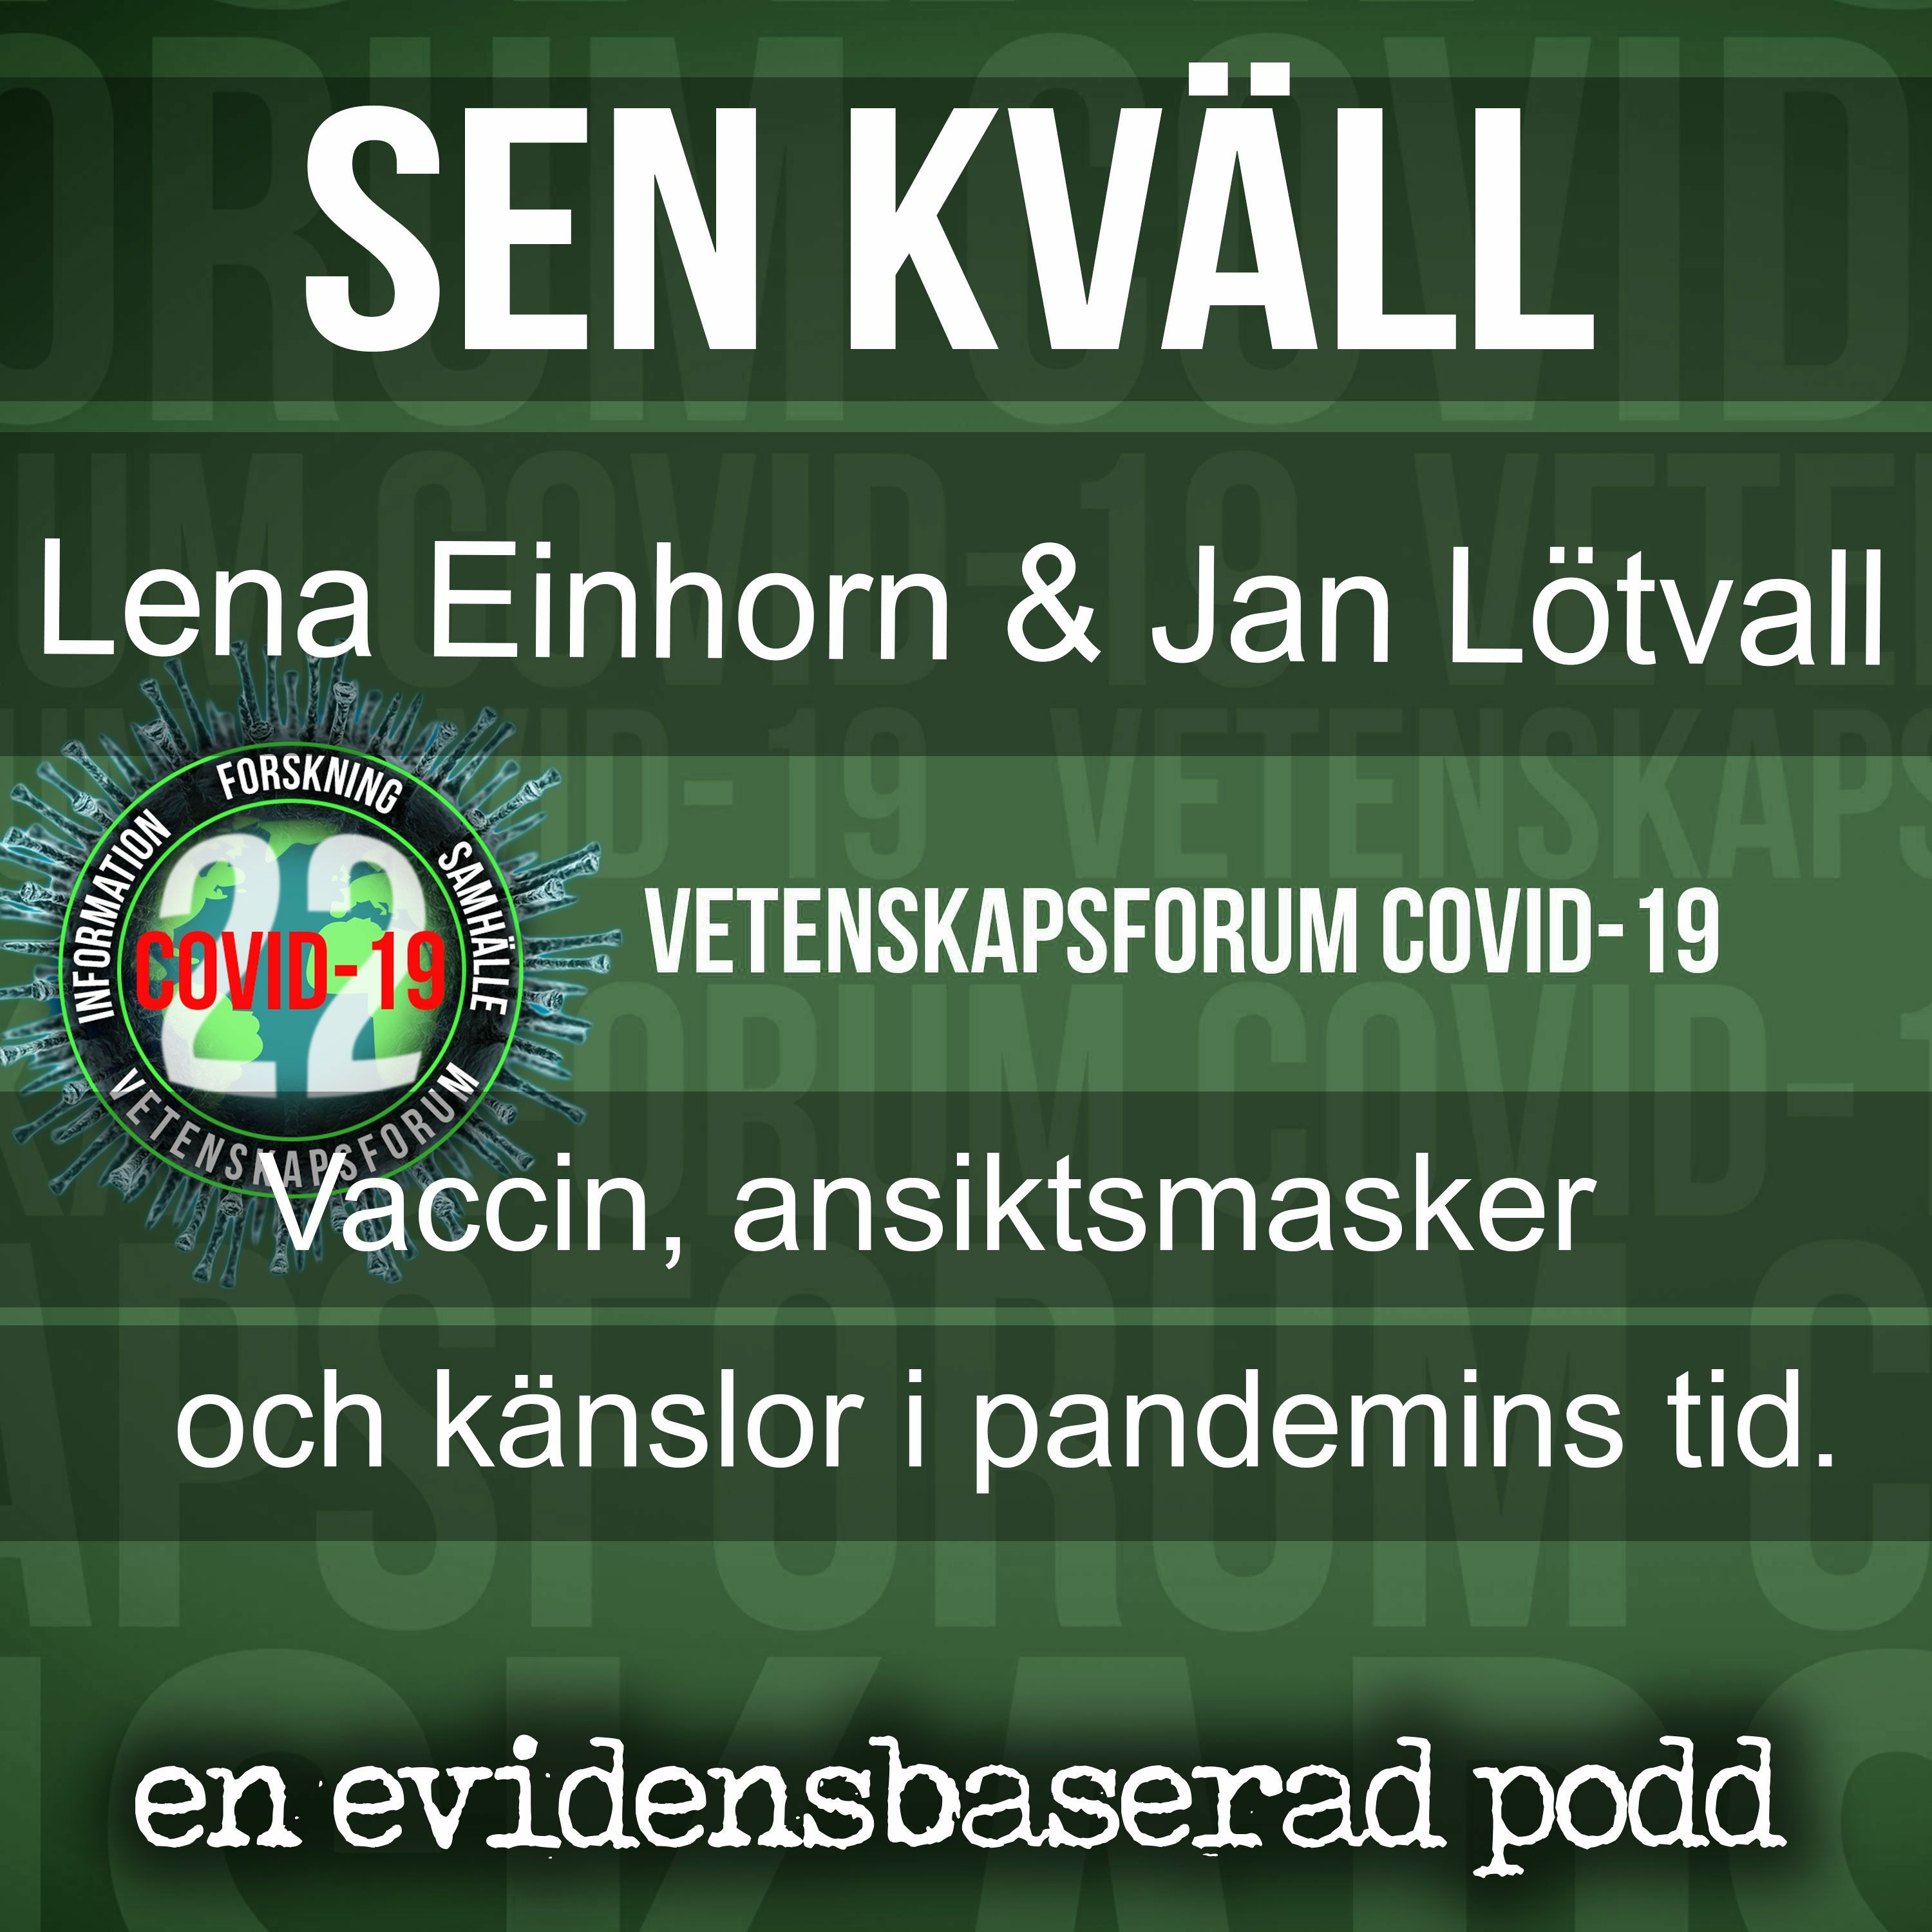 Sen kväll med Lena Einhorn och Jan Lötvall